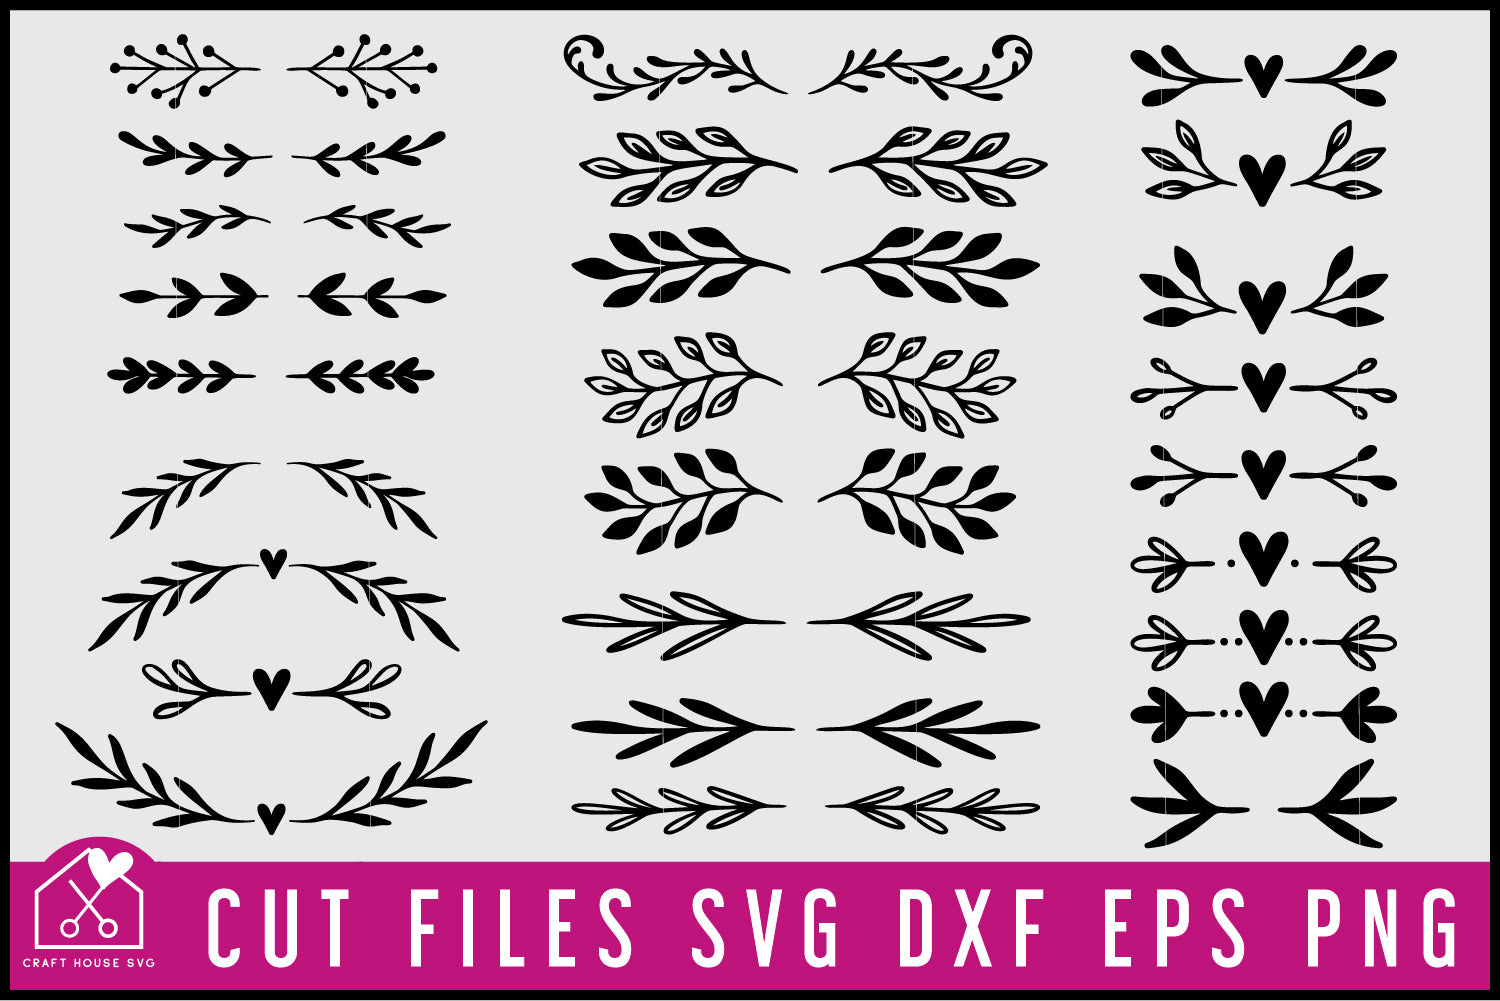 Floral Text Dividers SVG Bundle, Flourish Decorative Elements Cut Files